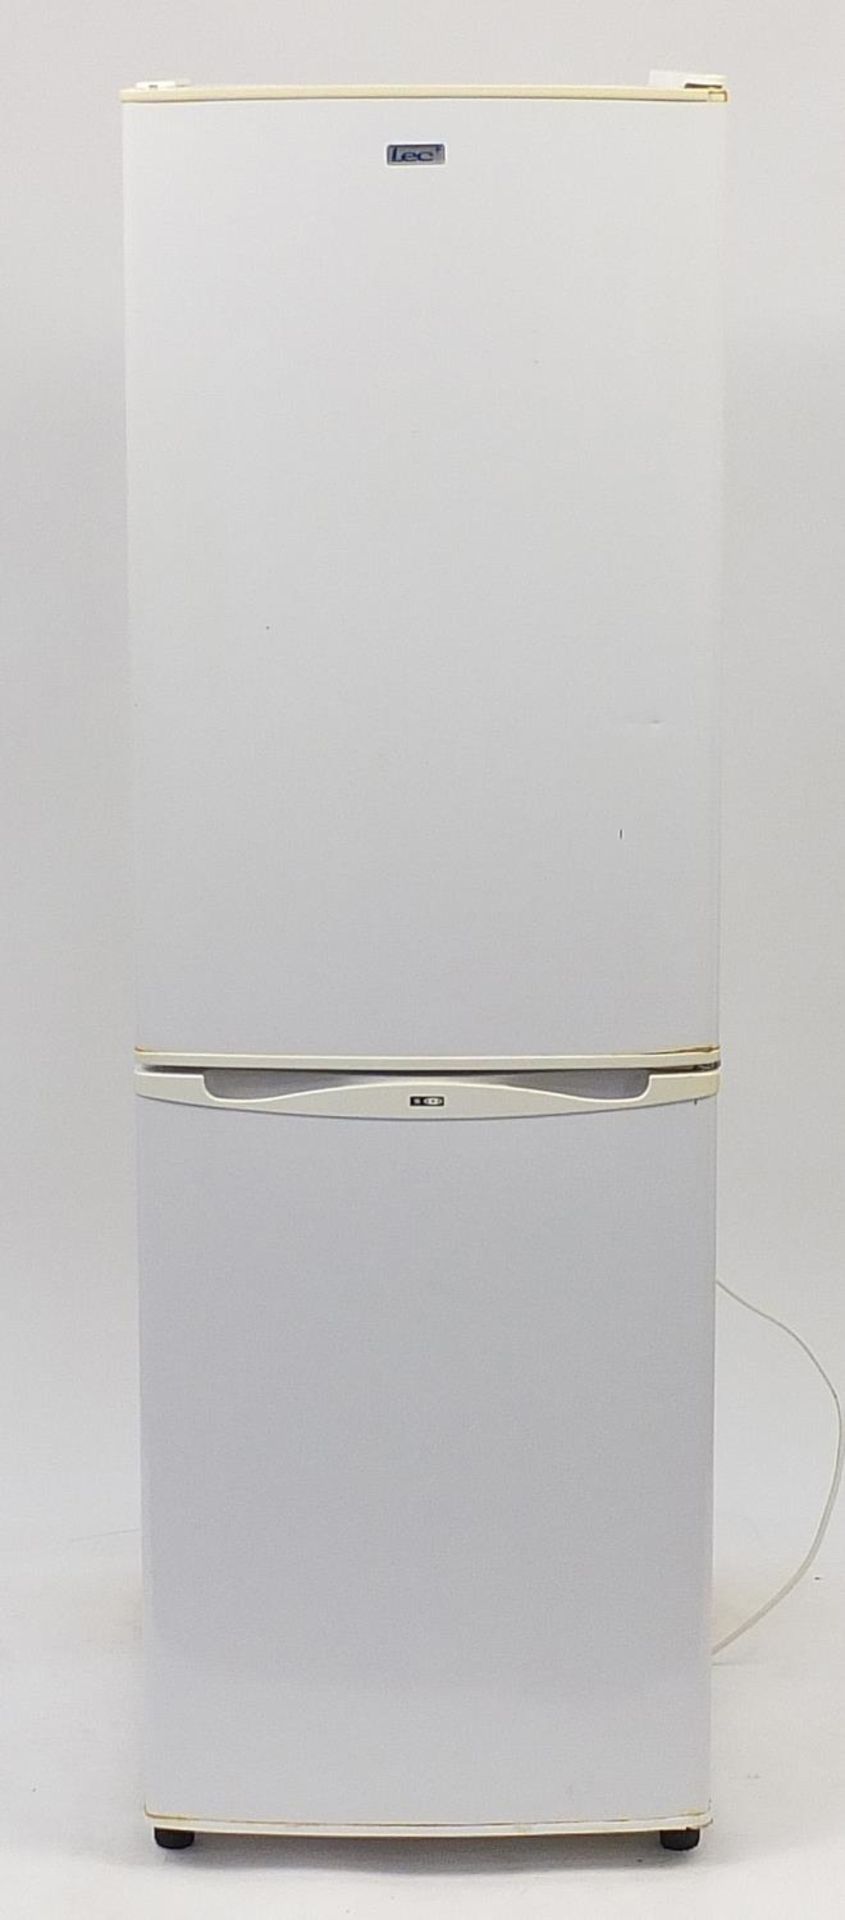 LEC fridge freezer, 153cm H x 48cm W x 53.5cm D : For Further Condition Reports Please Visit Our